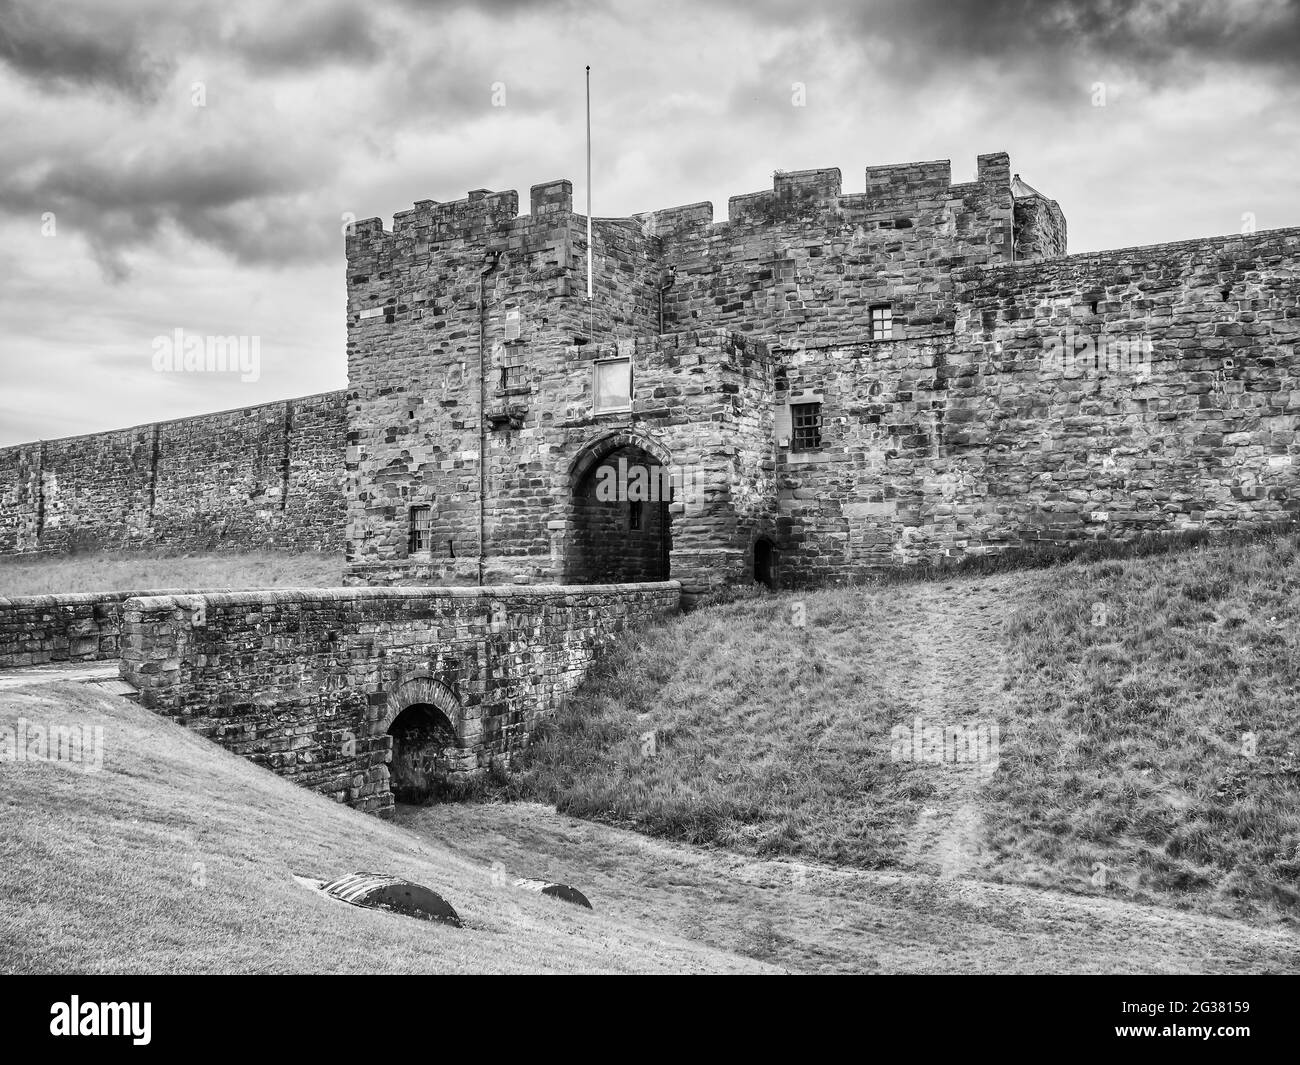 El es del castillo medieval de Carlisle y la fortaleza, en la ciudad de Carlisle, en el condado de Cumbria, en el noroeste de Inglaterra. Foto de stock